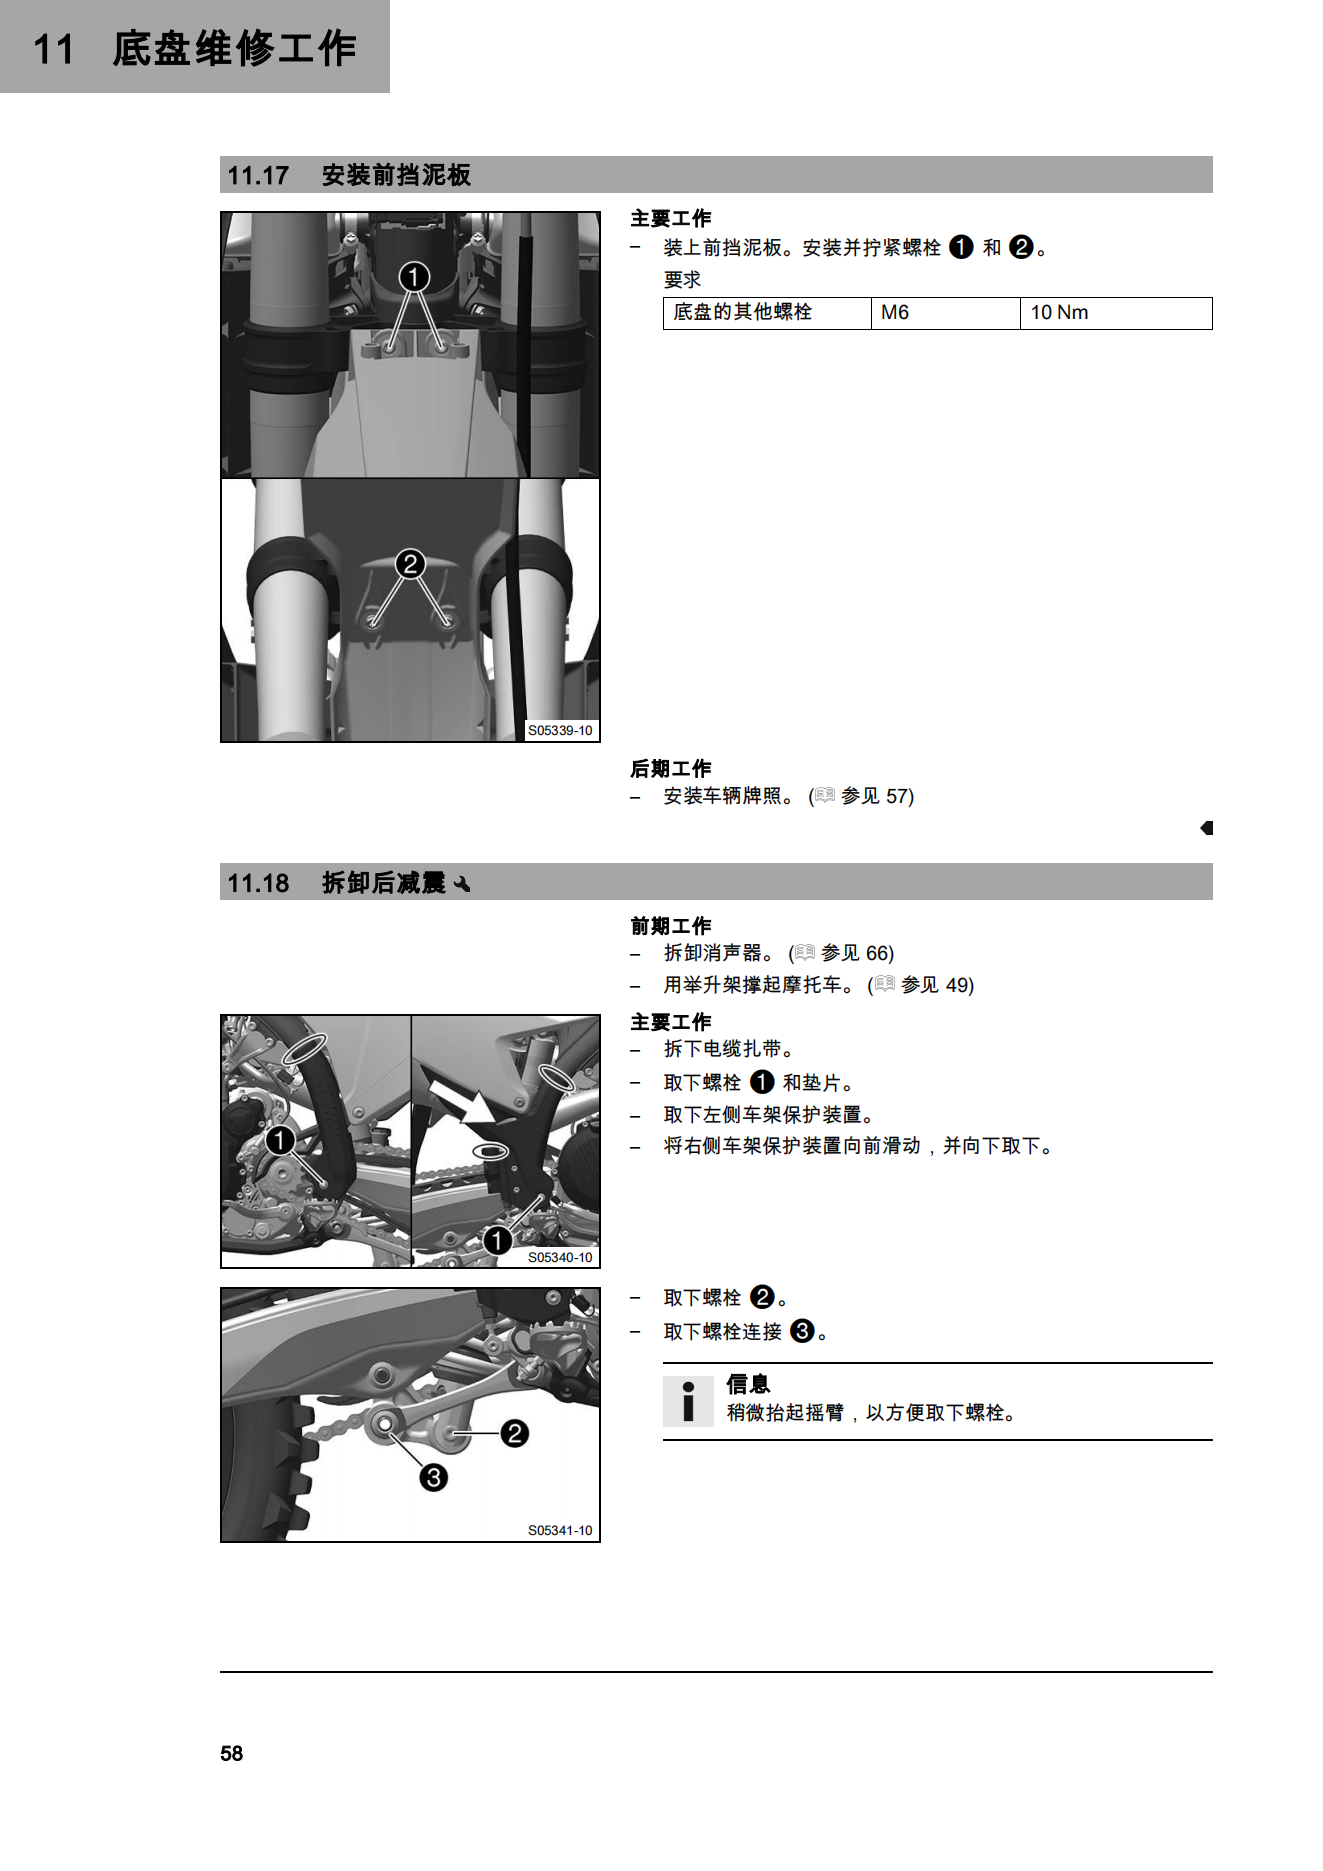 简体中文2023年250 XC-F 2023用户手册插图3